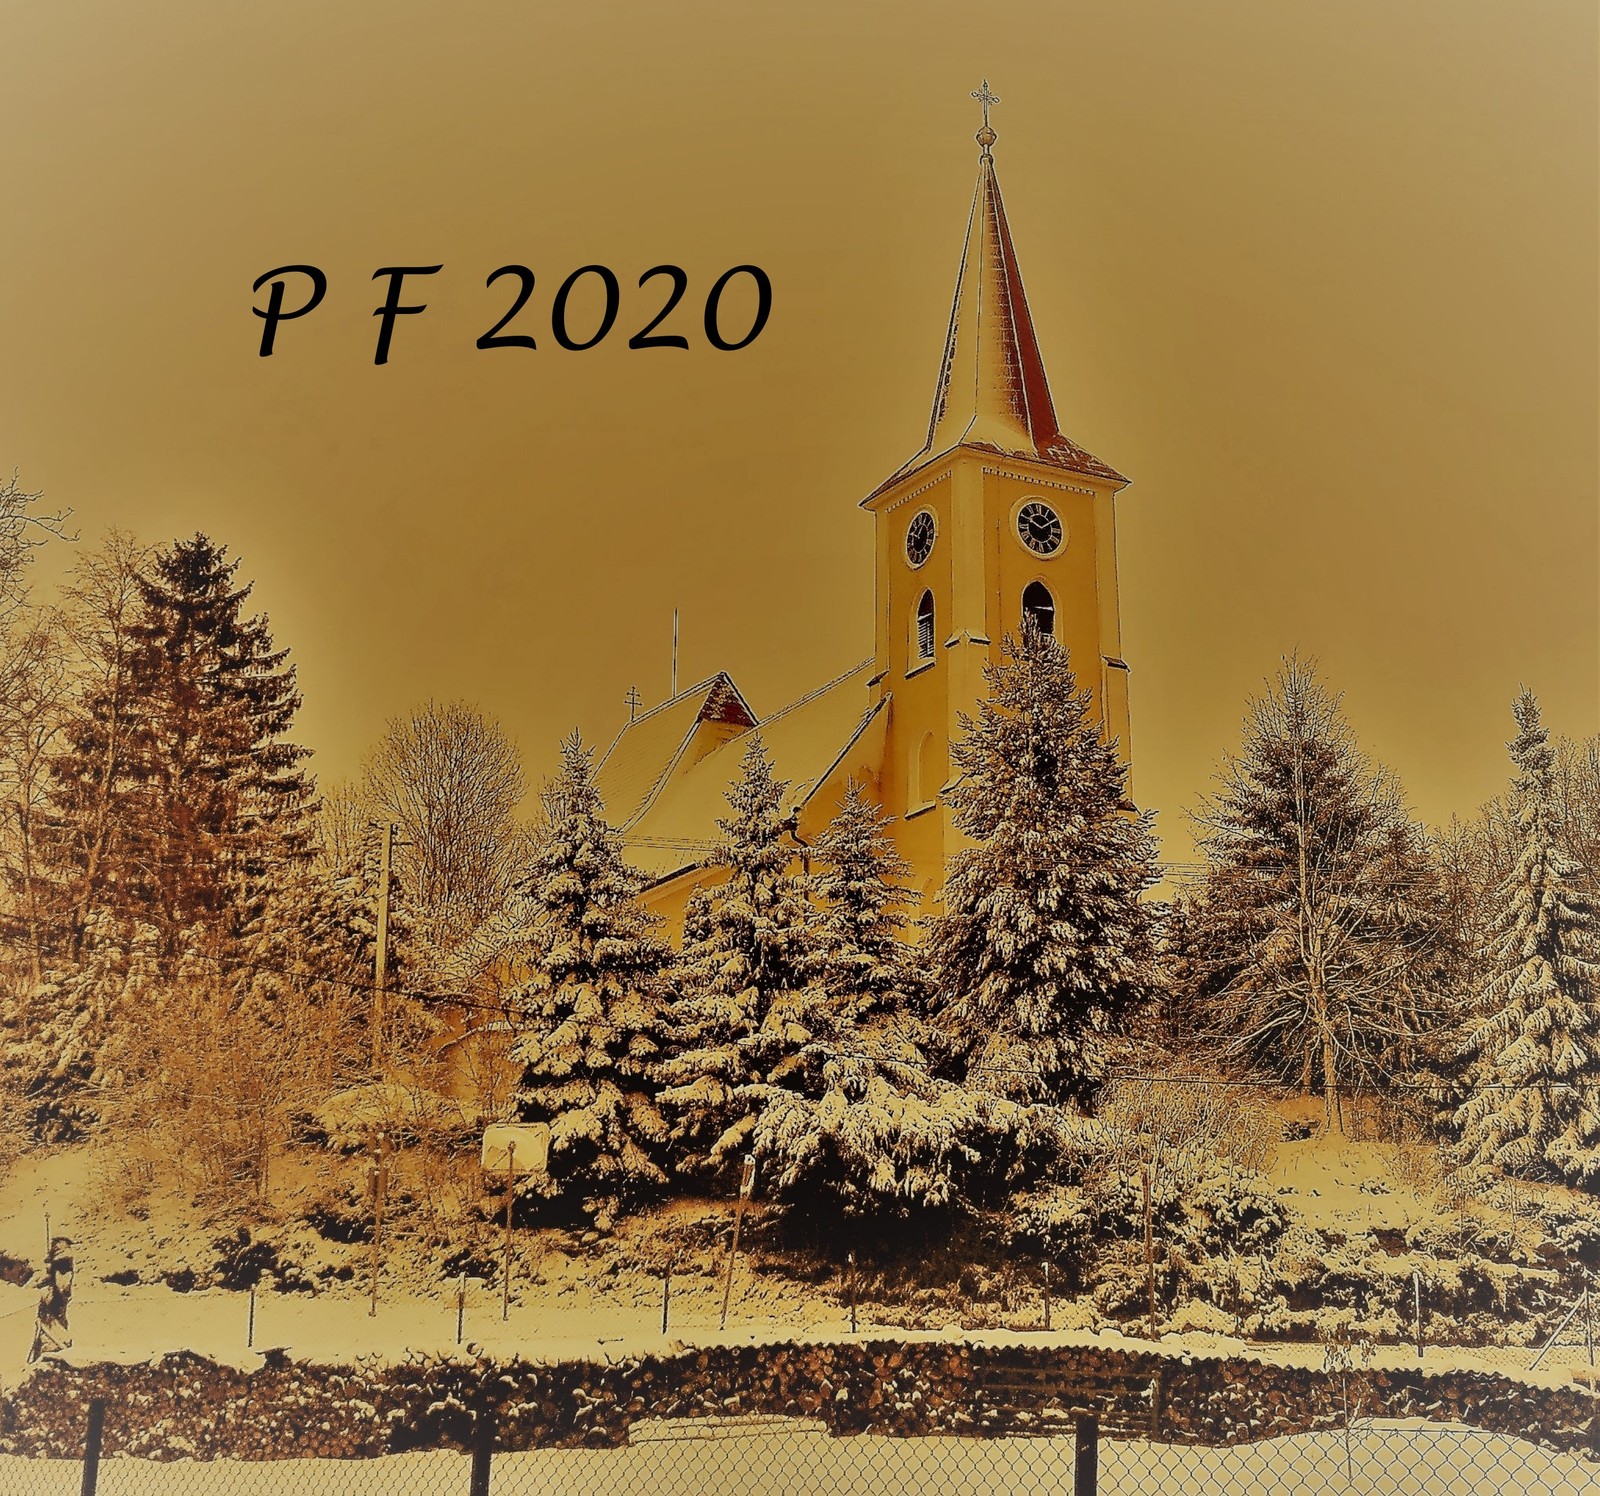 pf 20205 (1).jpg